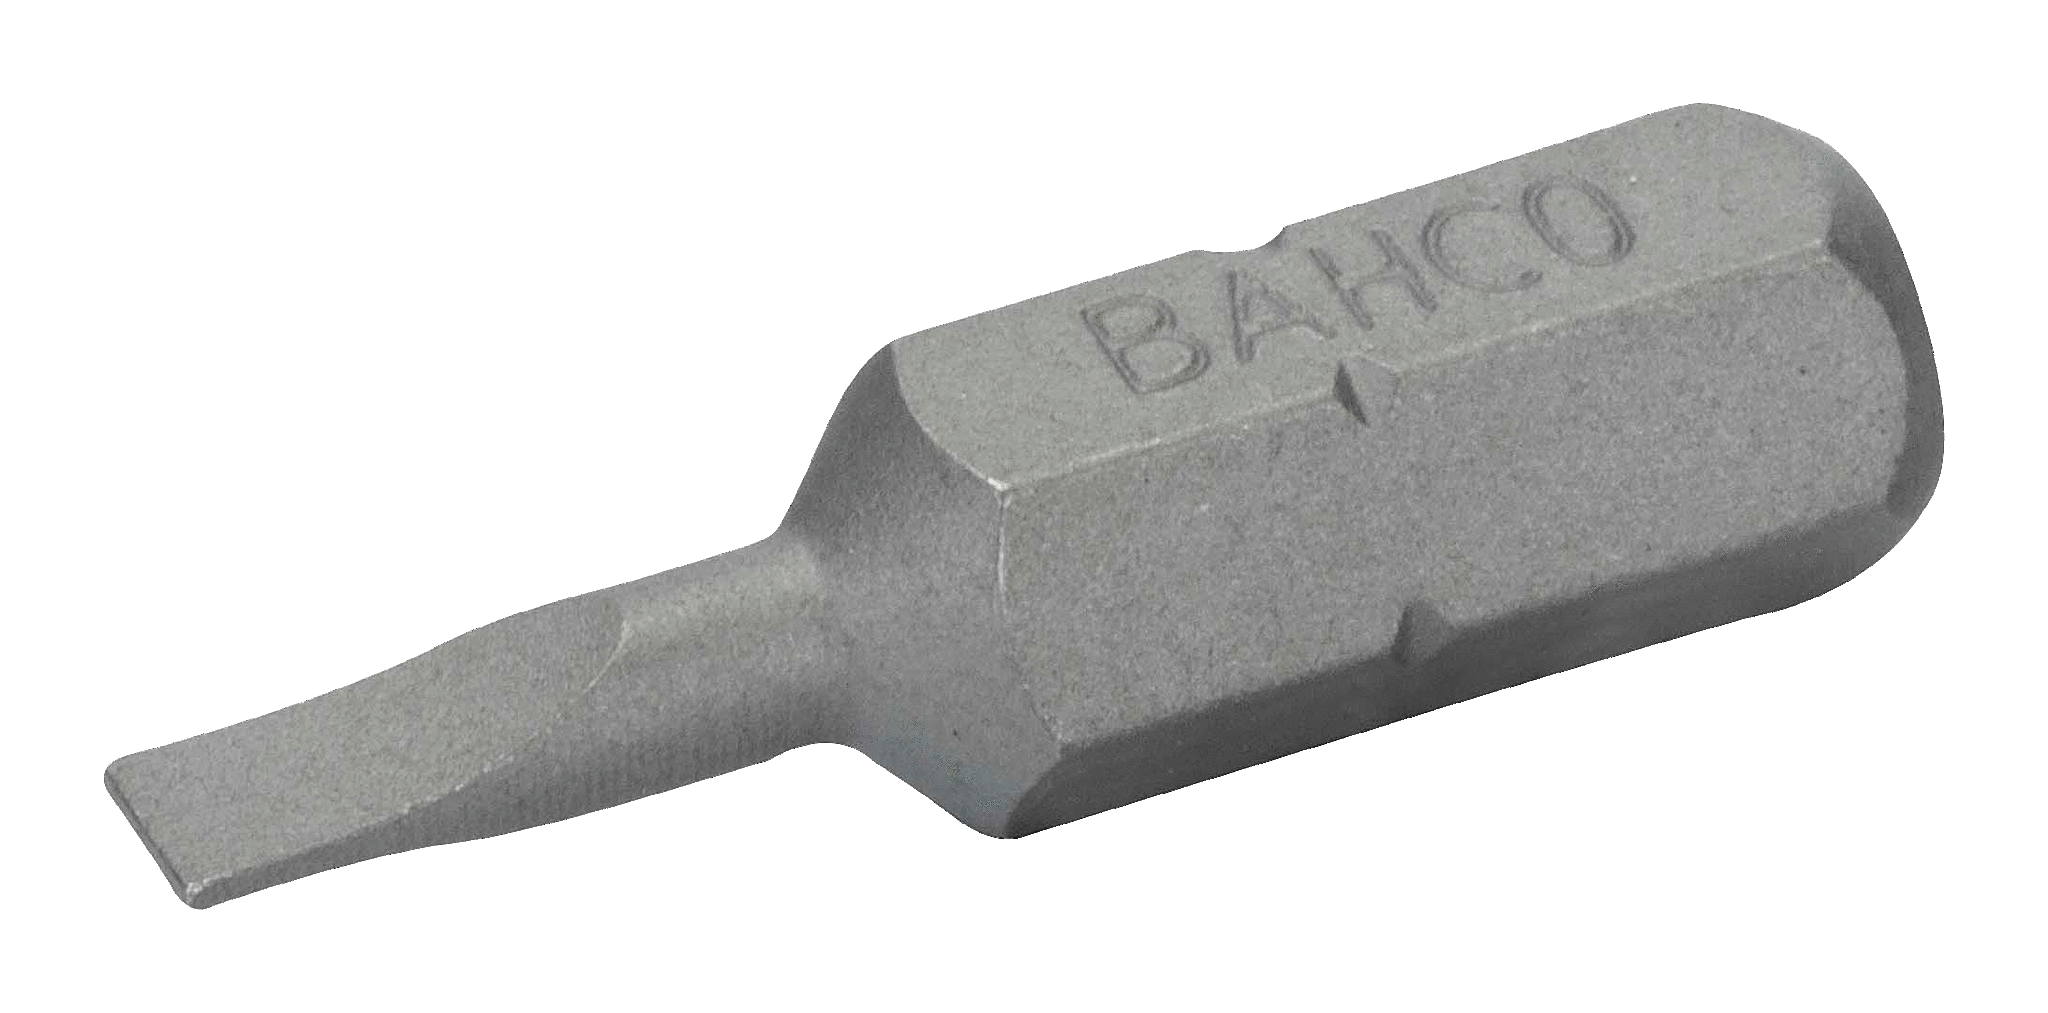 картинка Стандартные биты для отверток под винты со шлицем, 25 мм BAHCO 59S/0.6-4.5-3P от магазина "Элит-инструмент"